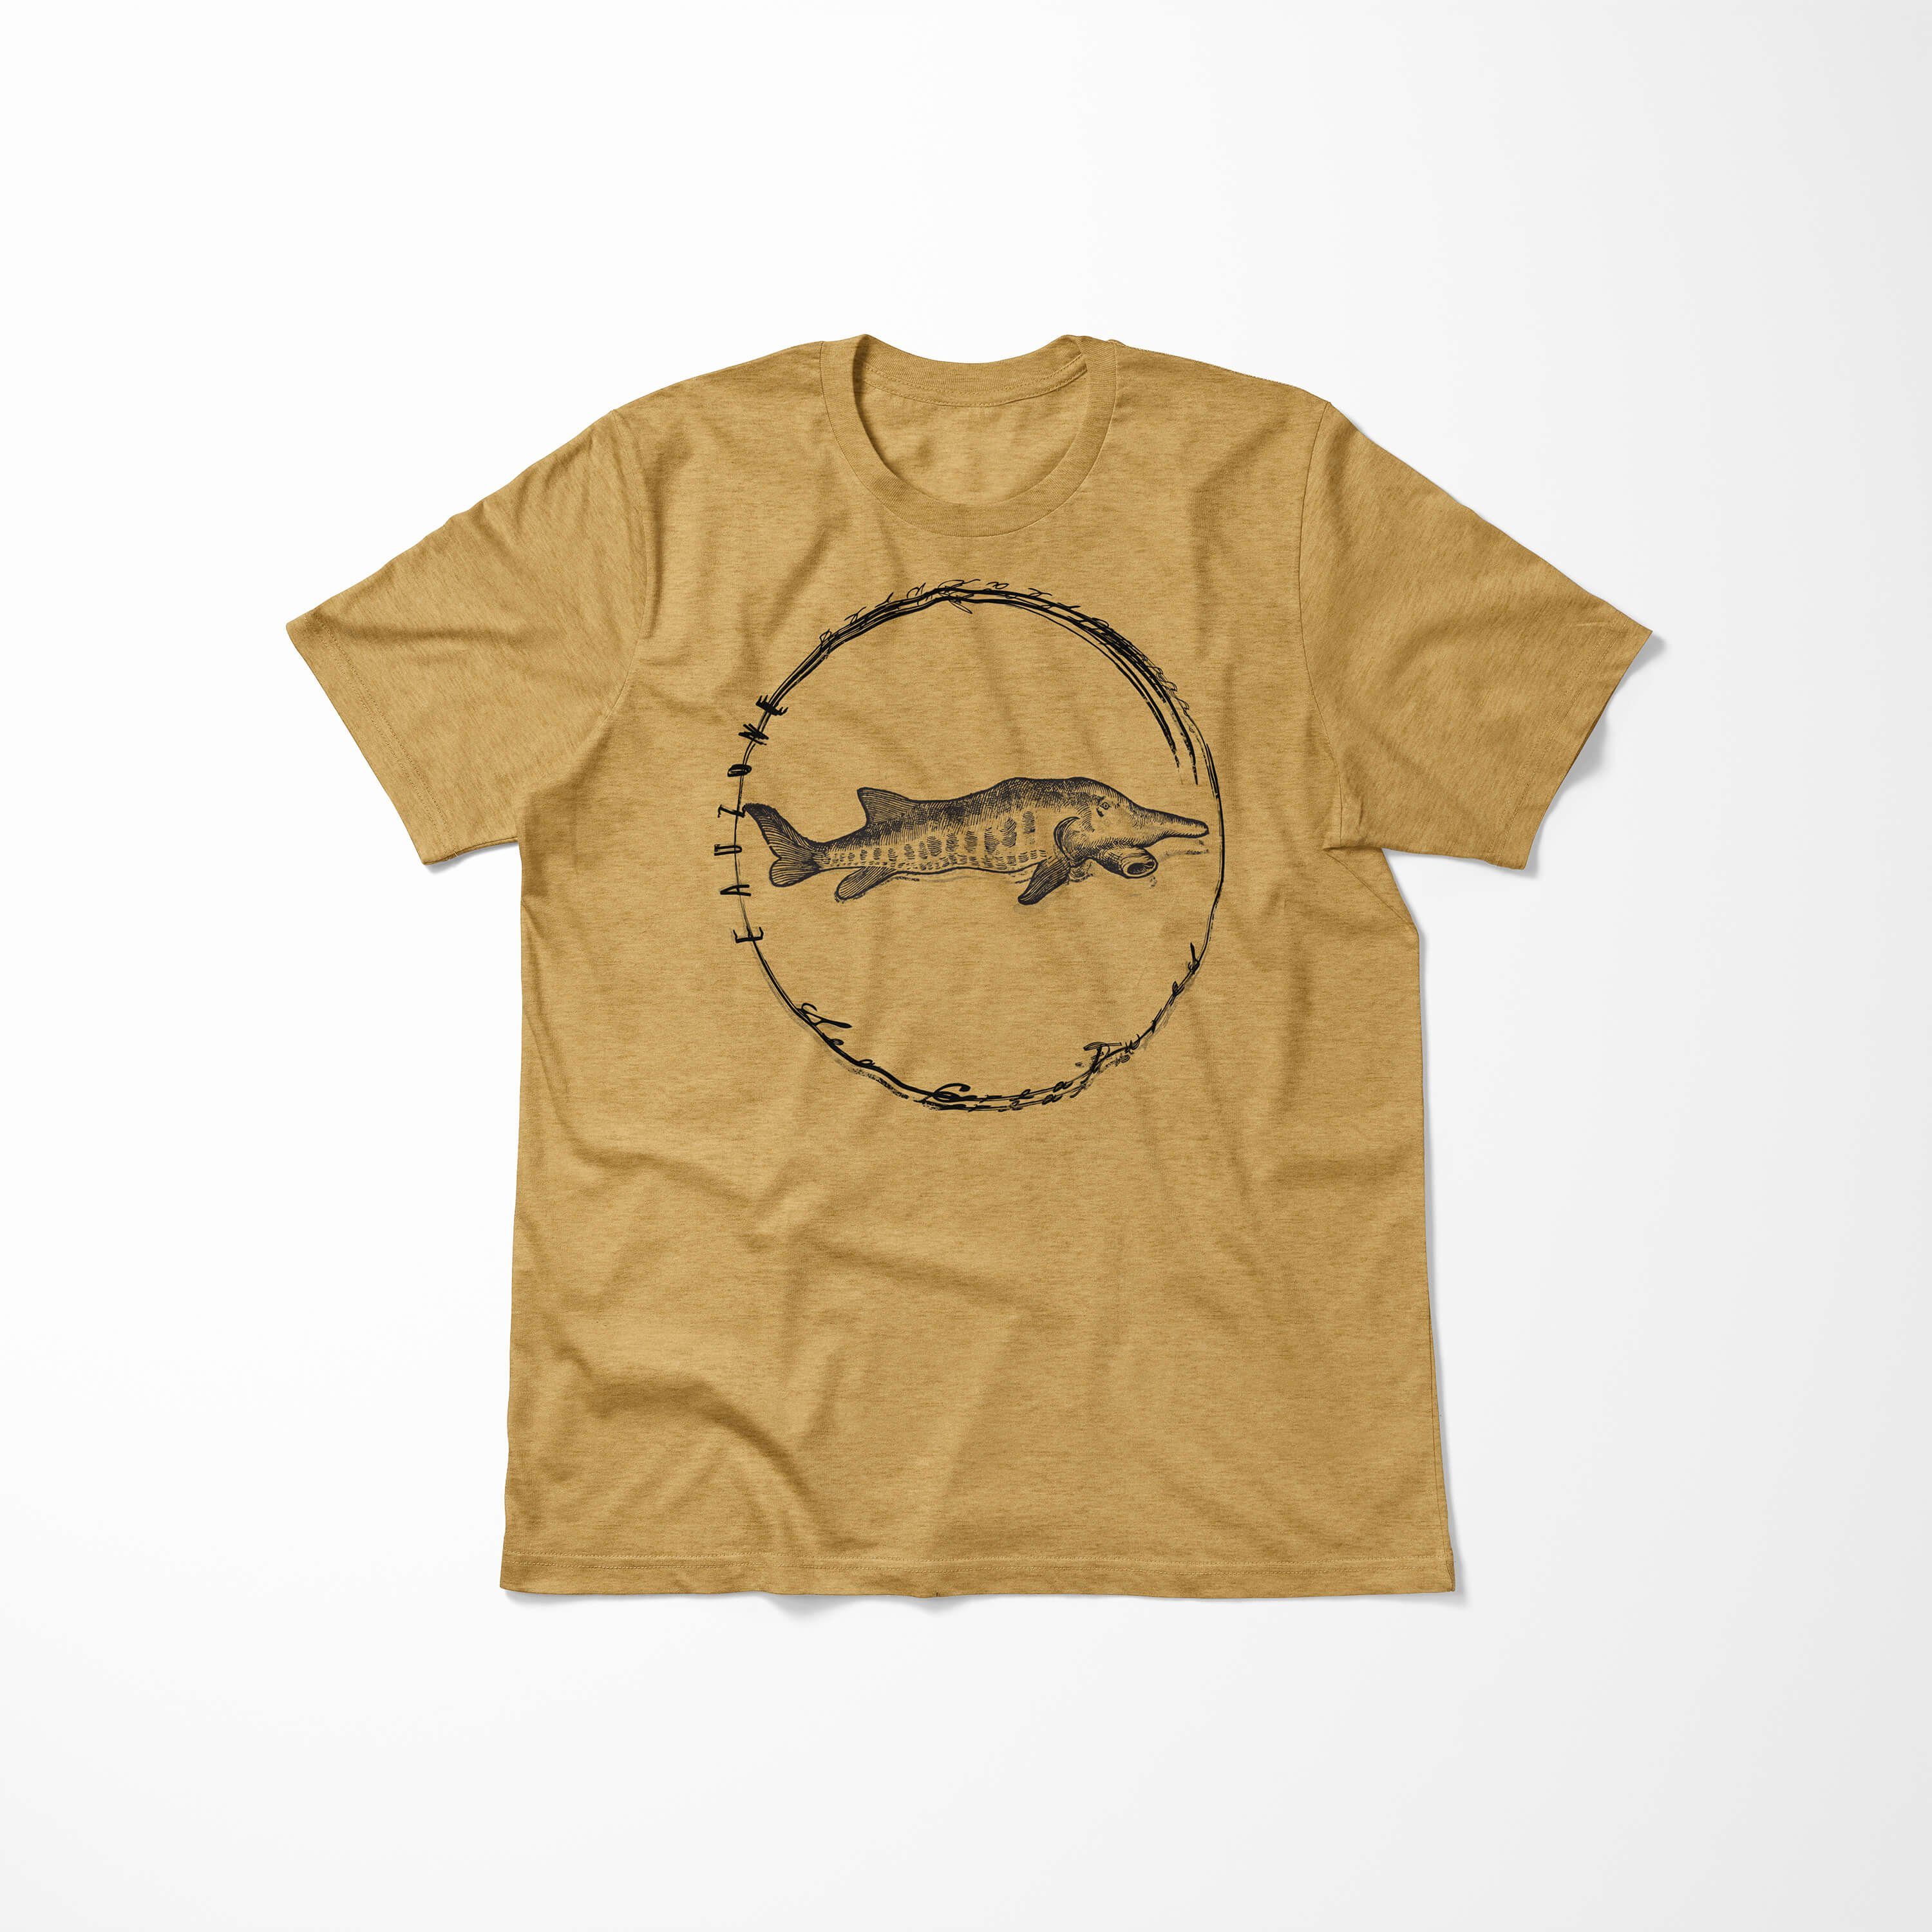 Antique Art Fische T-Shirt Serie: Struktur 090 sportlicher - feine Creatures, T-Shirt Gold Sinus Schnitt Sea Sea / und Tiefsee